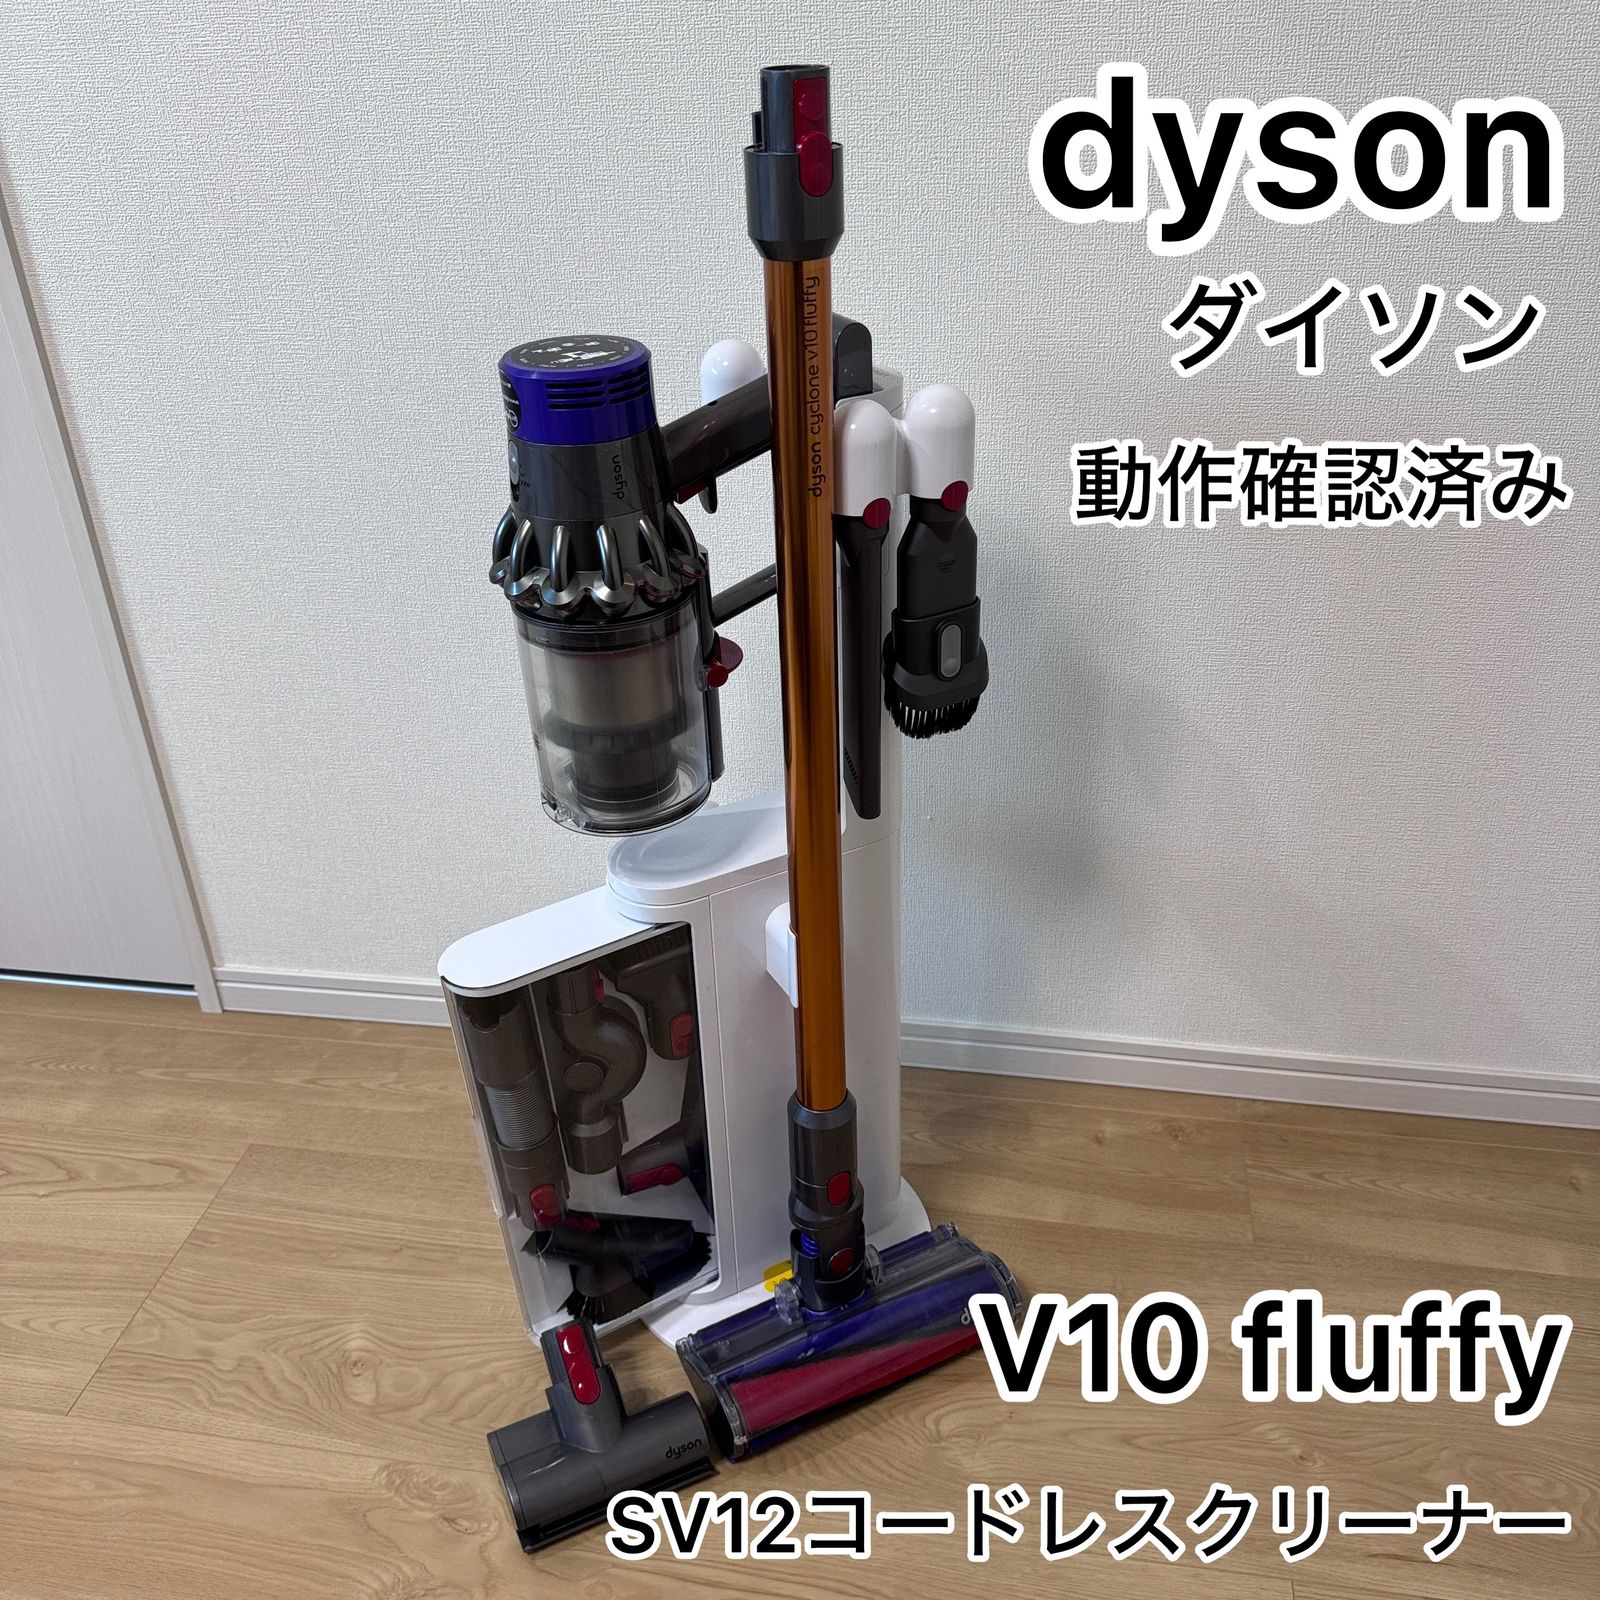 ダイソン v10 sv12 動作確認 分解内部洗浄 コードレスクリーナー 掃除 